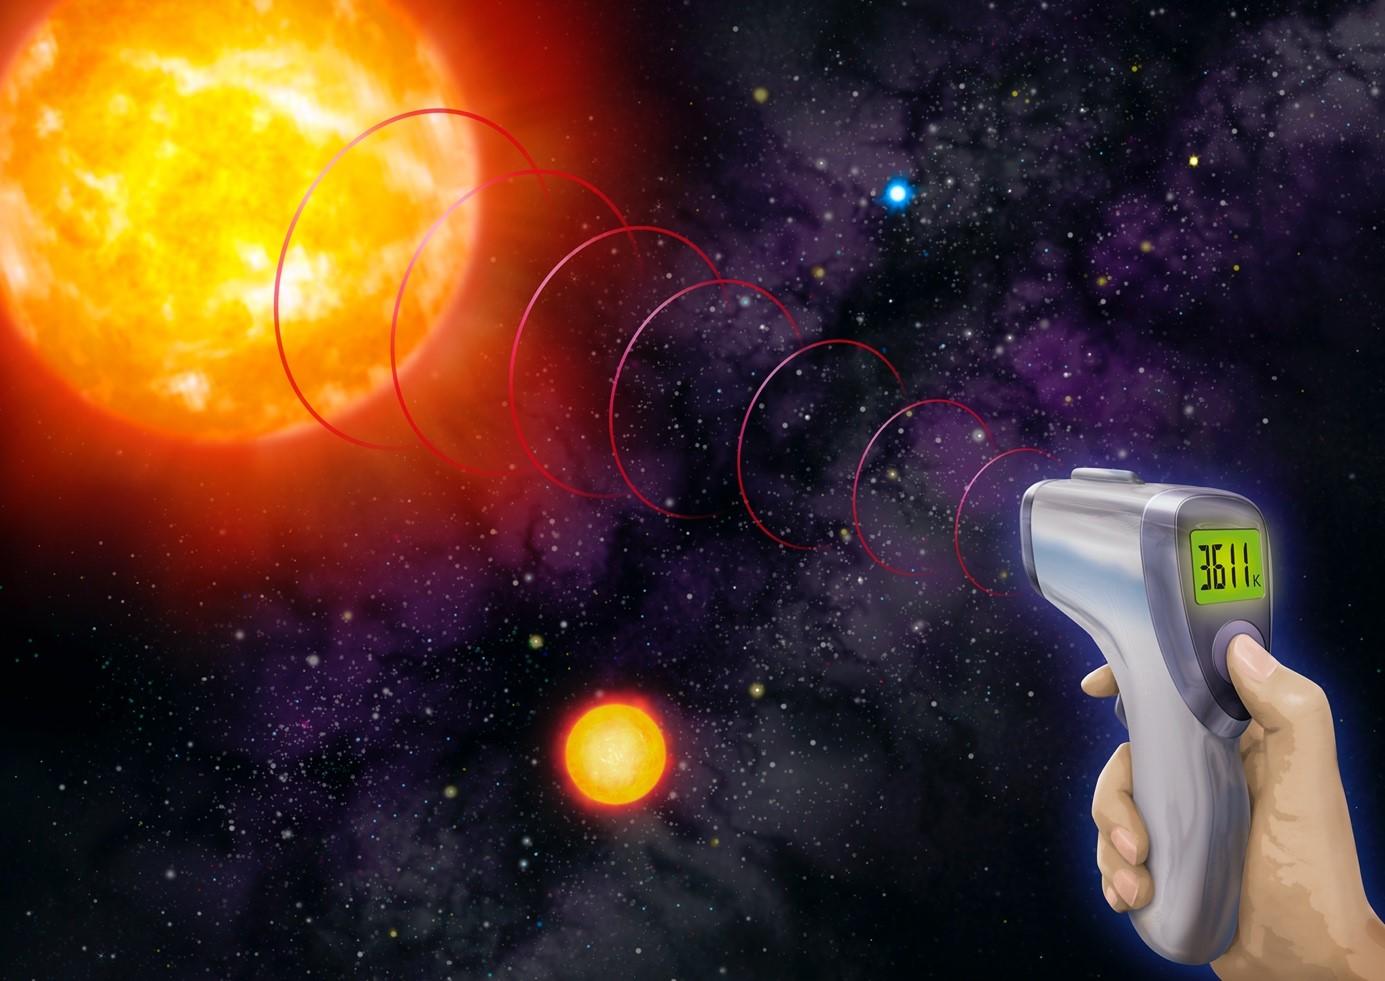 【京都産業大学】太った星の体温測定 -- 爆発前の超巨大星の表面温度を正確に測定することに成功 -- 英国学術雑誌Monthly Notices of the Royal Astronomical Societyに掲載